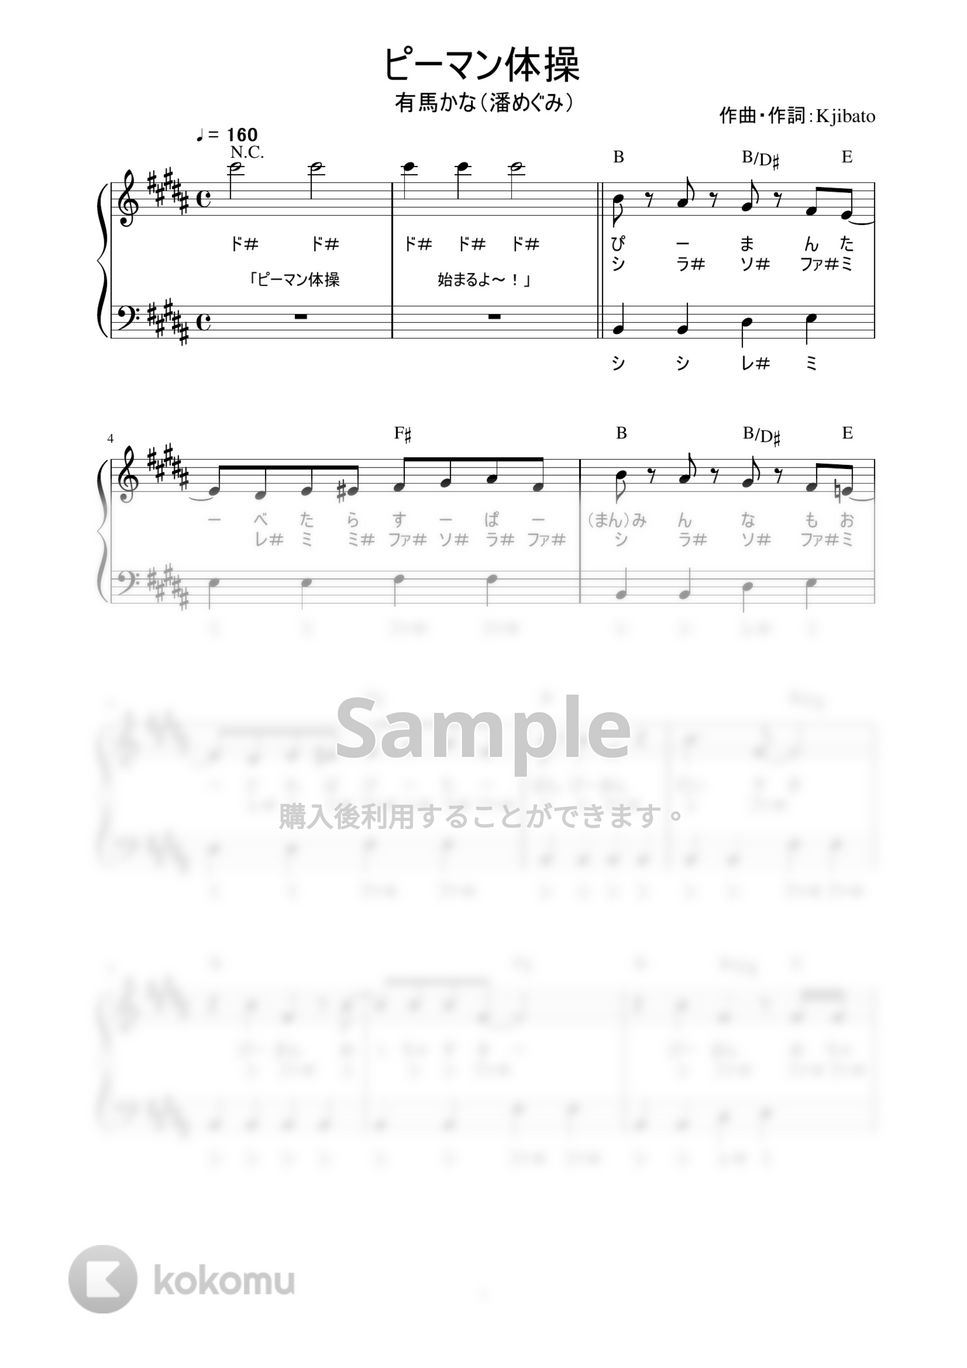 有馬かな - ピーマン体操 (かんたん / 歌詞付き / ドレミ付き / 初心者) by piano.tokyo